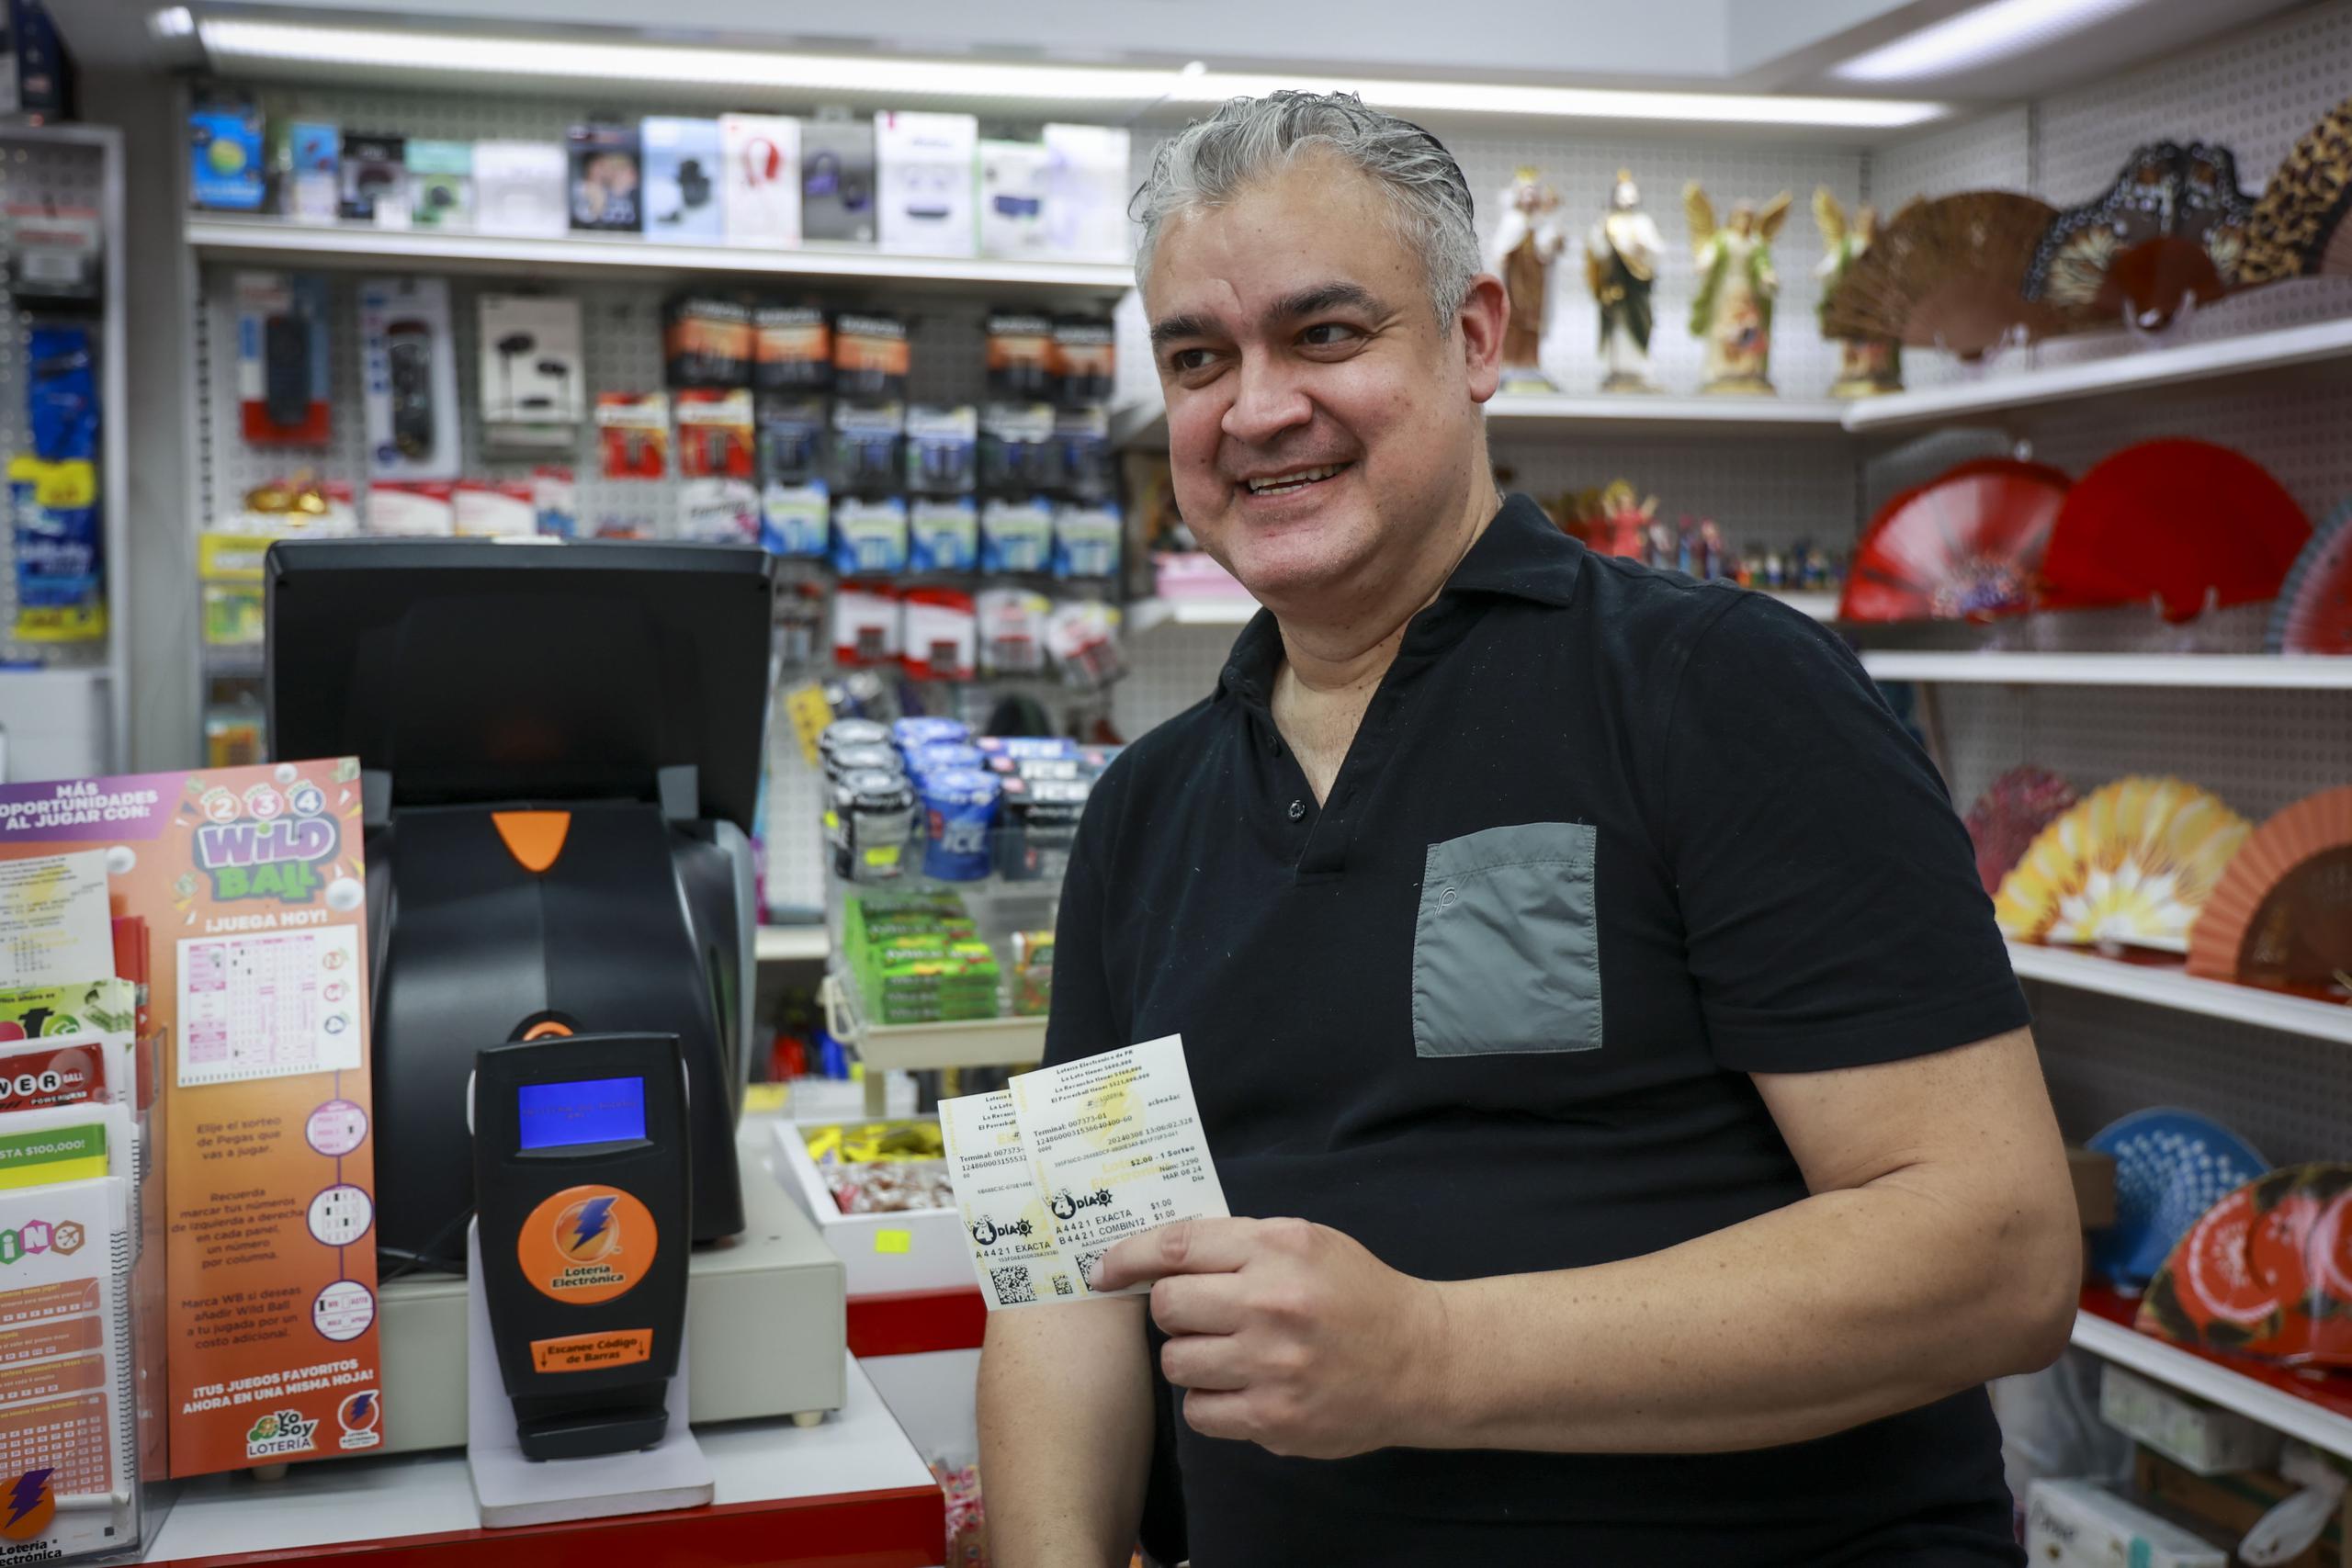 Mariano Rodríguez Arroyo, propietario de la farmacia, recordó que a los pocos meses de adquirir el negocio, la suerte cayó allí al vender un boleto con el premio de $9.5 millones de Loto.